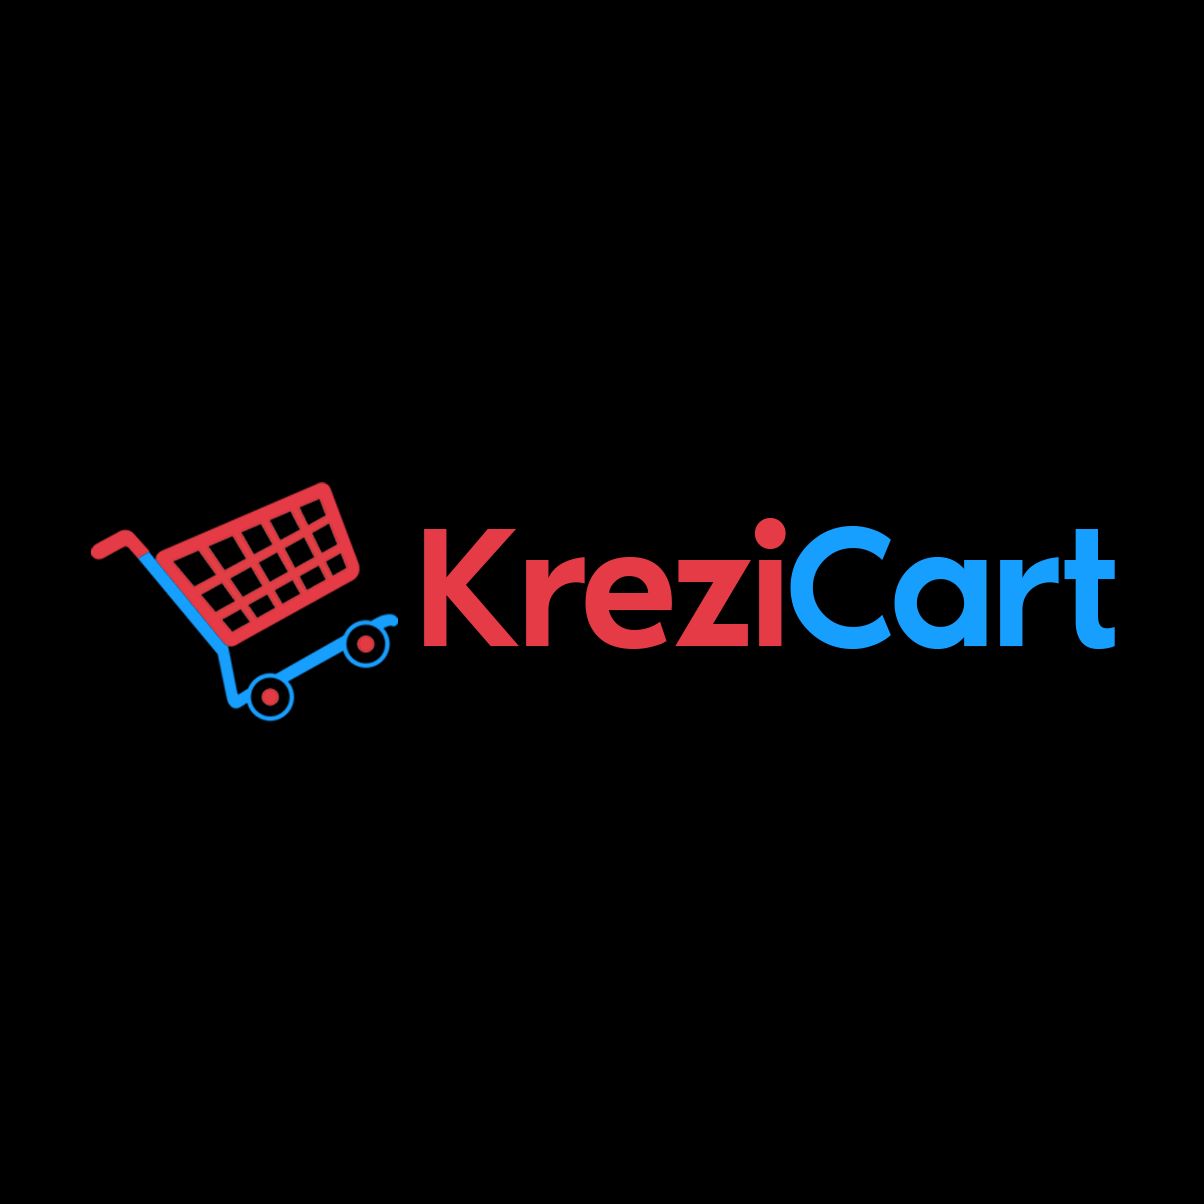 KreziCart